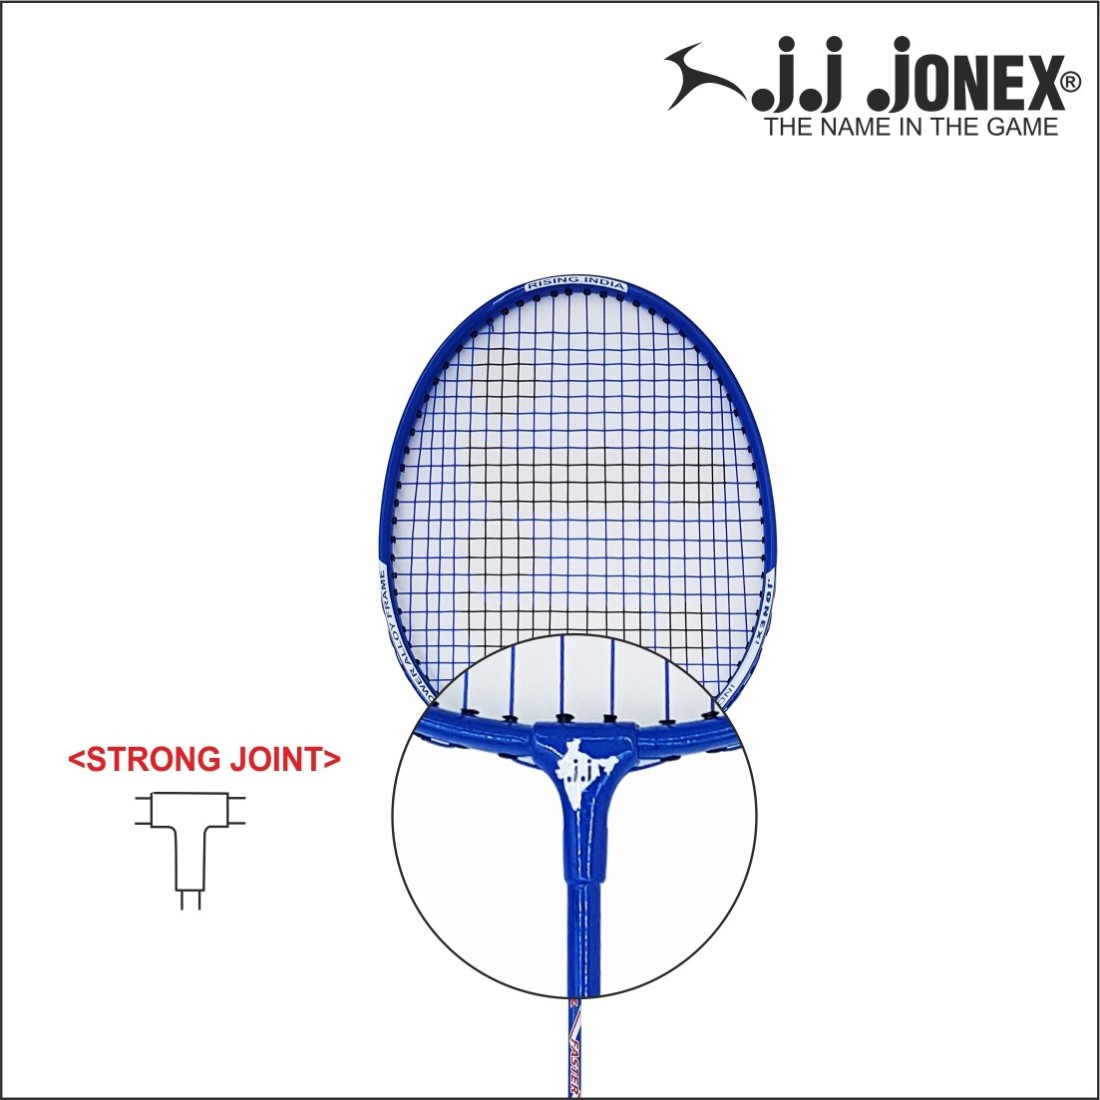 JJ Jonex FASTER BADMINTON PACK OF 2 Multicolor Strung Badminton Racquet (MYC) Badminton Kit